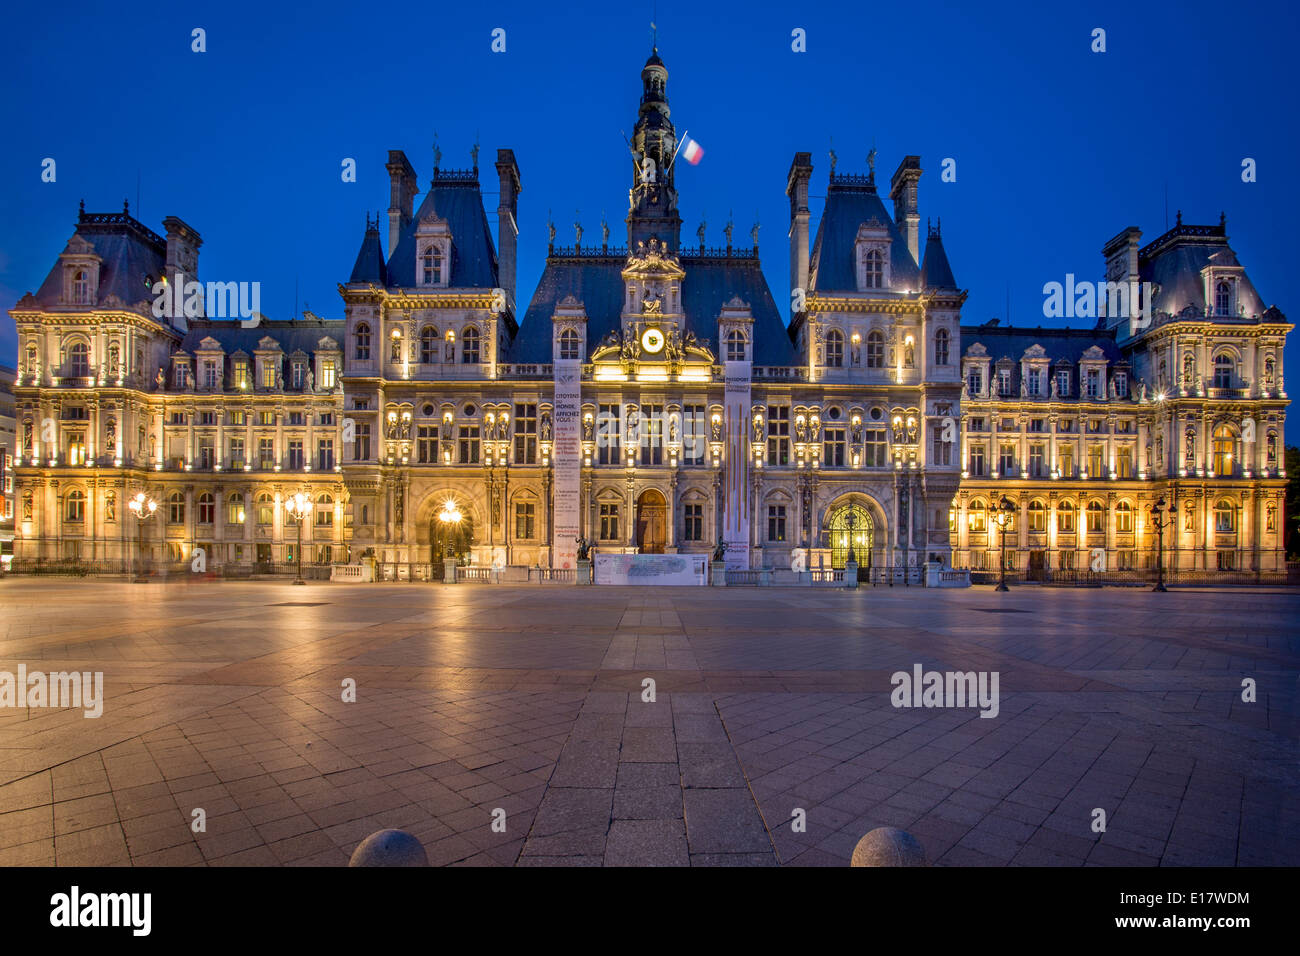 Twilight at Hotel de Ville, Paris France Stock Photo